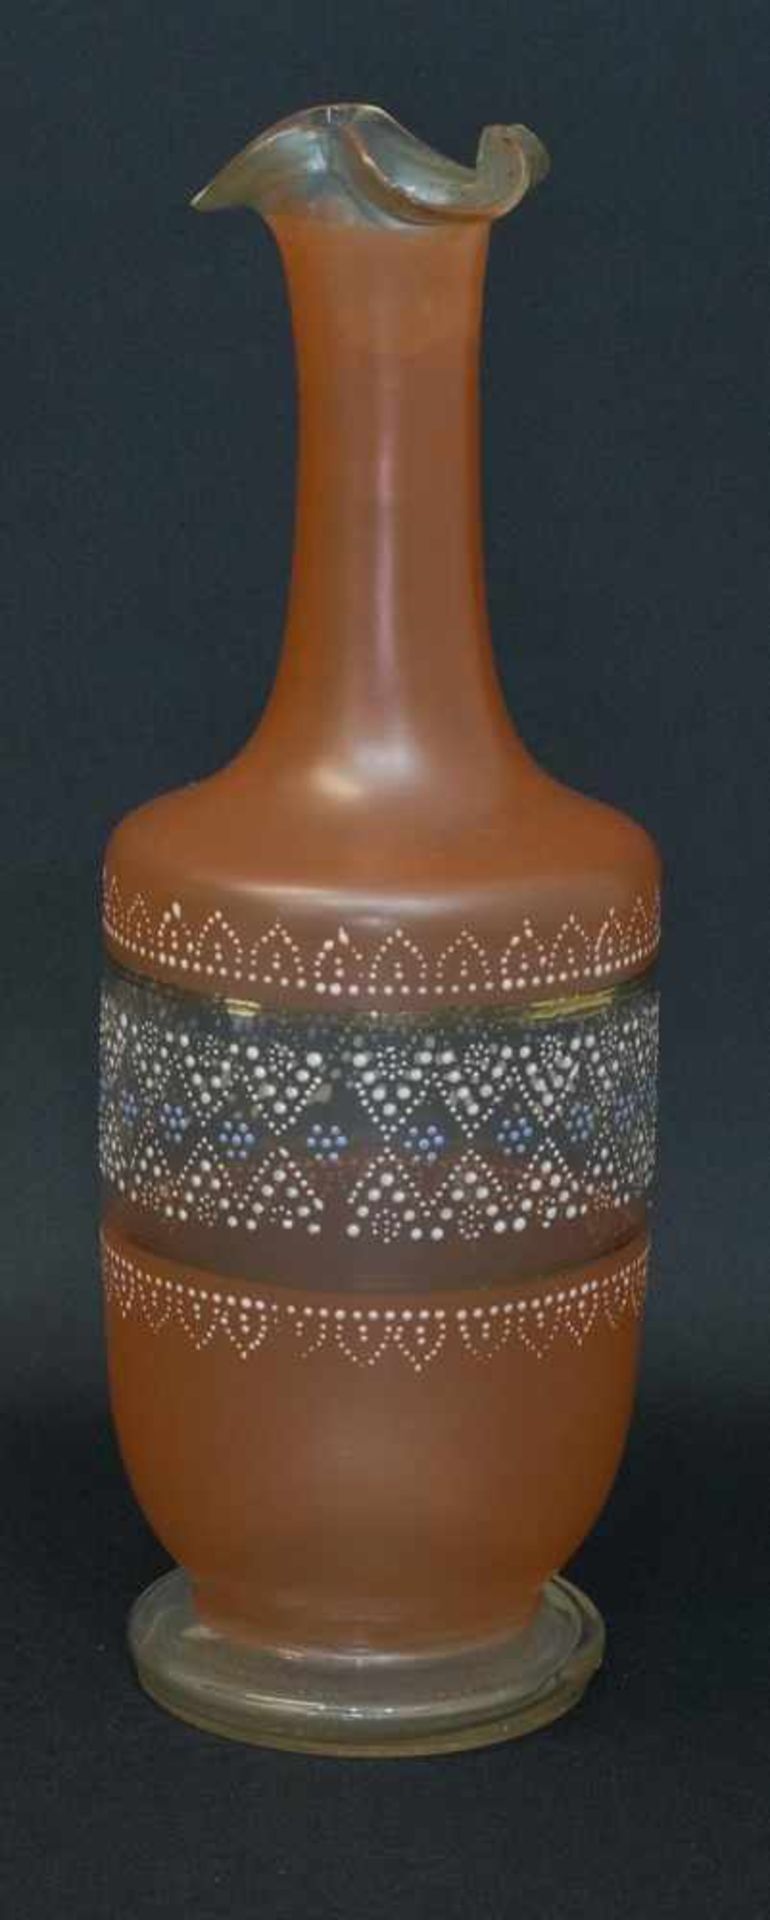 Vase um 1900, Klarglas, farbig überfangen, mit handgemaltem Dekor im Stil der Zeit, gekniffter Rand,